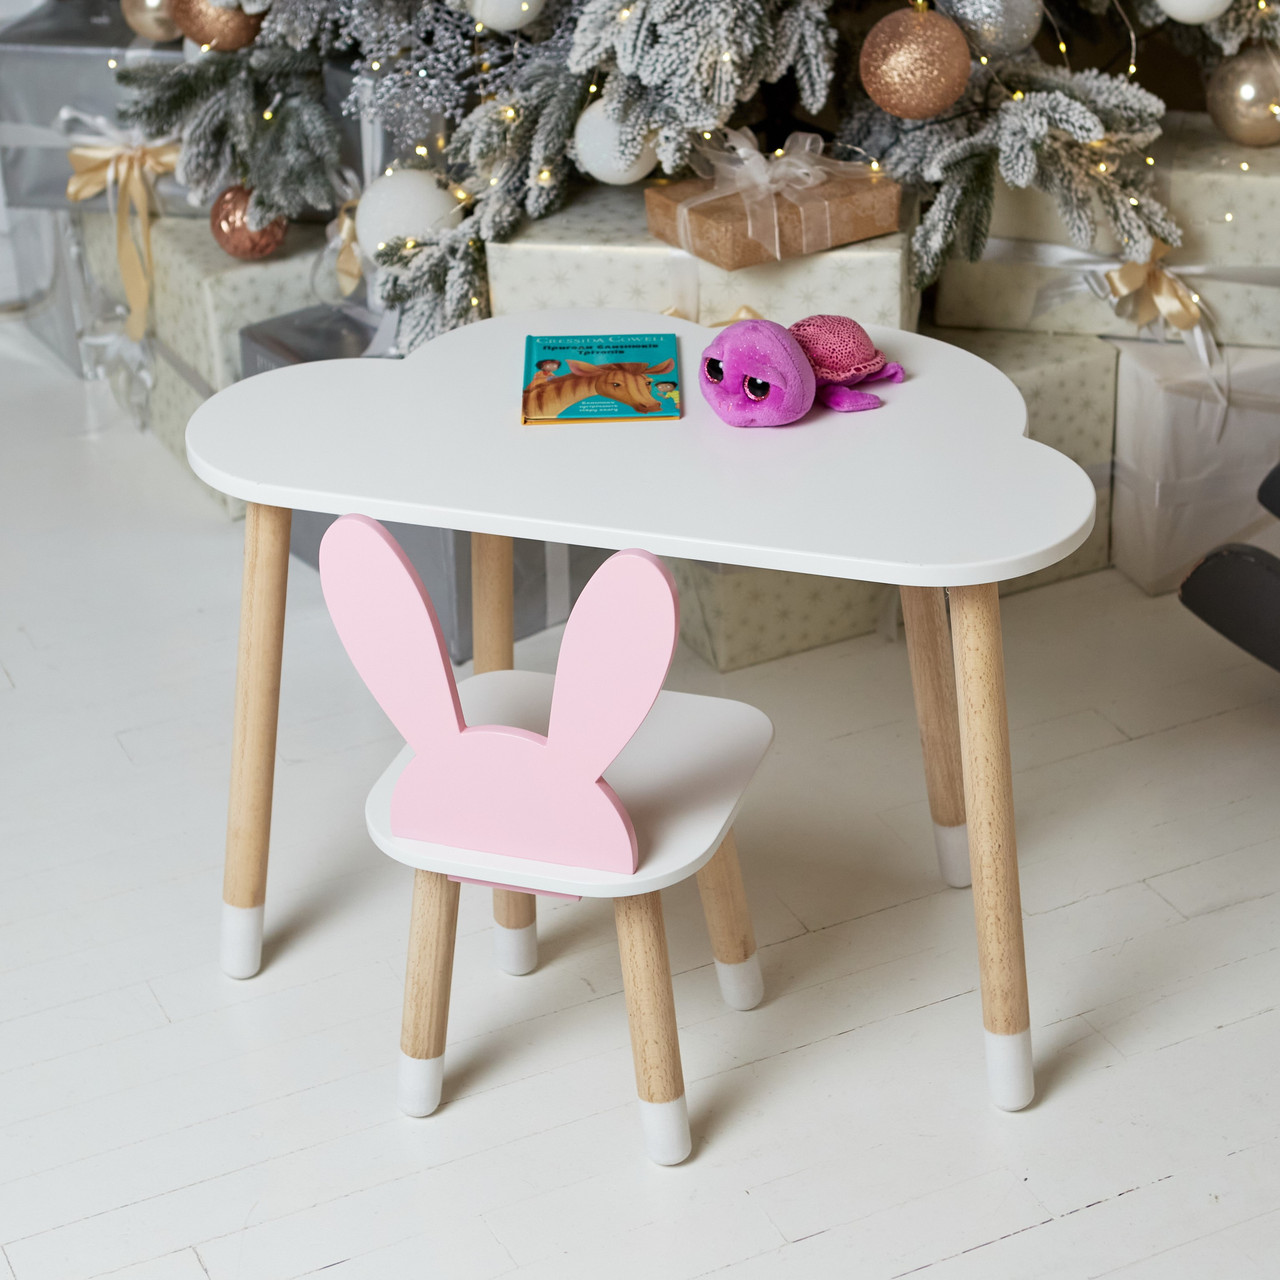 Дитячий столик хмарка і стільчик вушка зайчика рожеві. Столик для ігор, занять, їжі